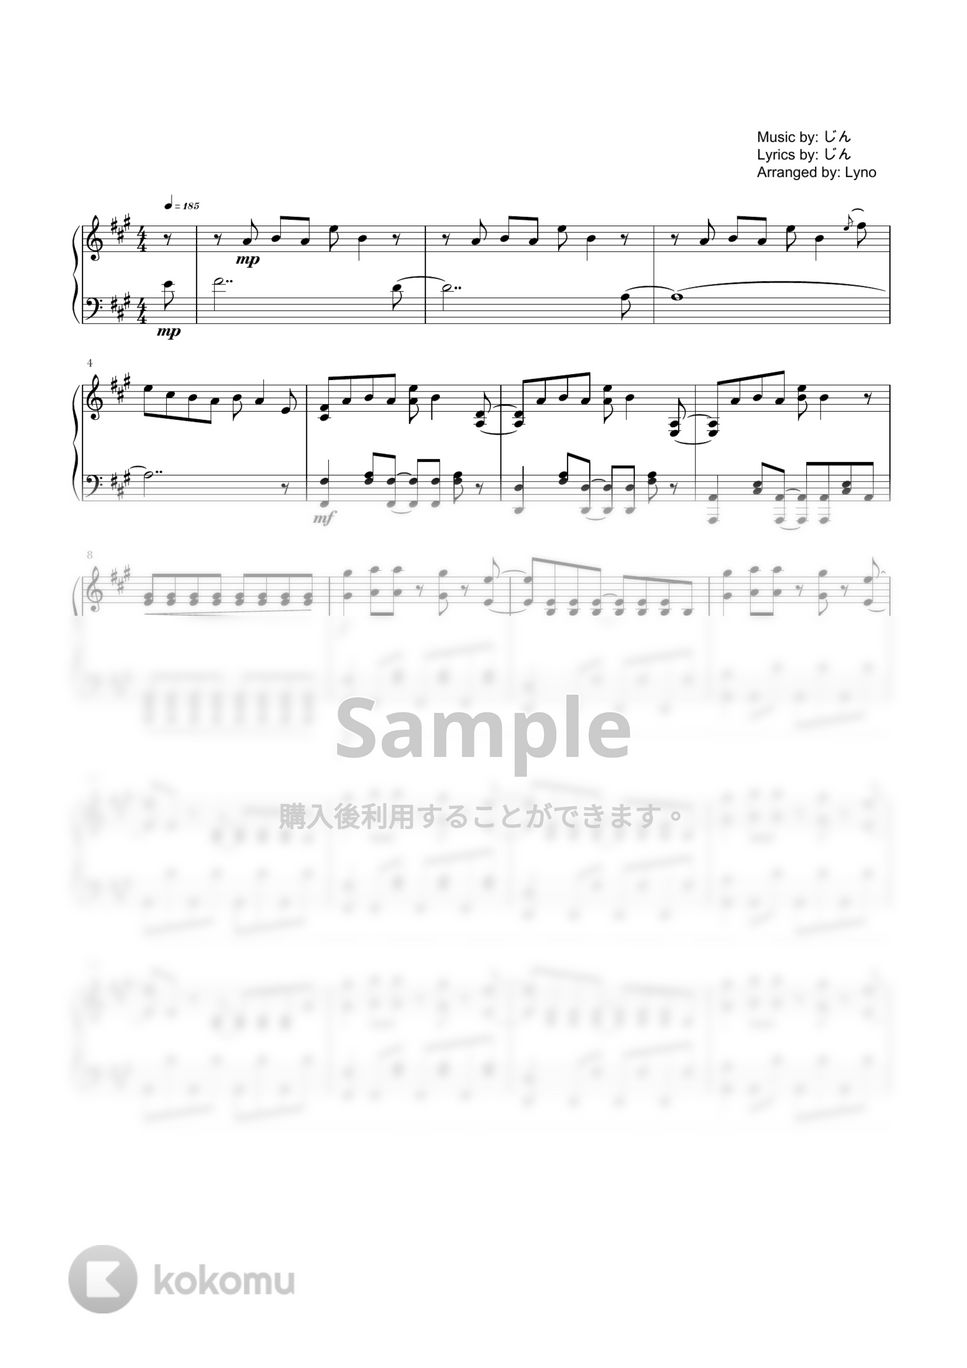 じん - サマータイムレコード (ピアノソロ上級) by Ray